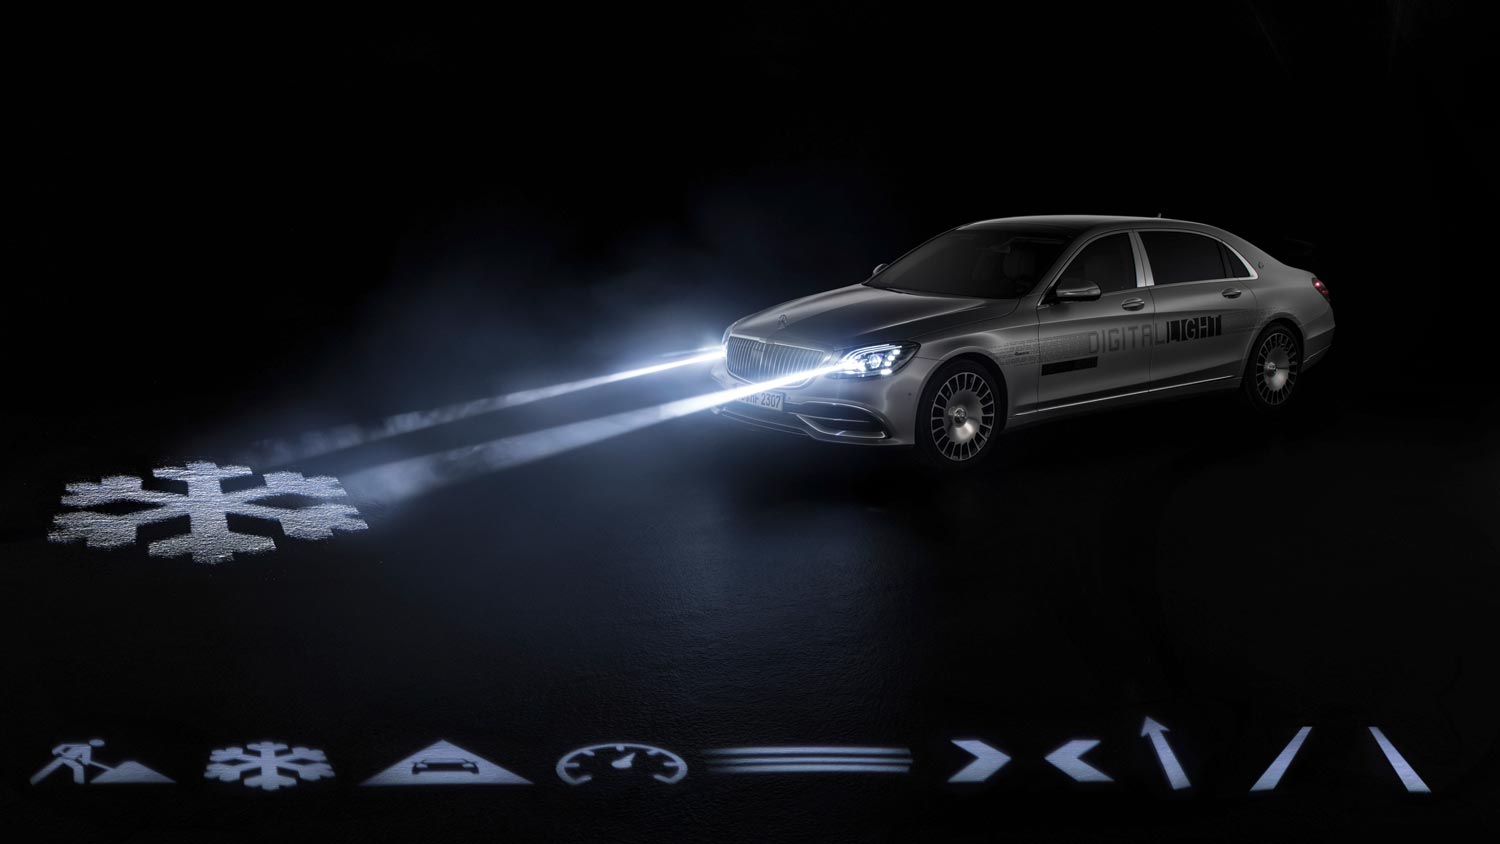 Sistem Digital Light Mercedes Memancarkan Ikon Navigasi Dan Amaran Pada Permukaan Jalan